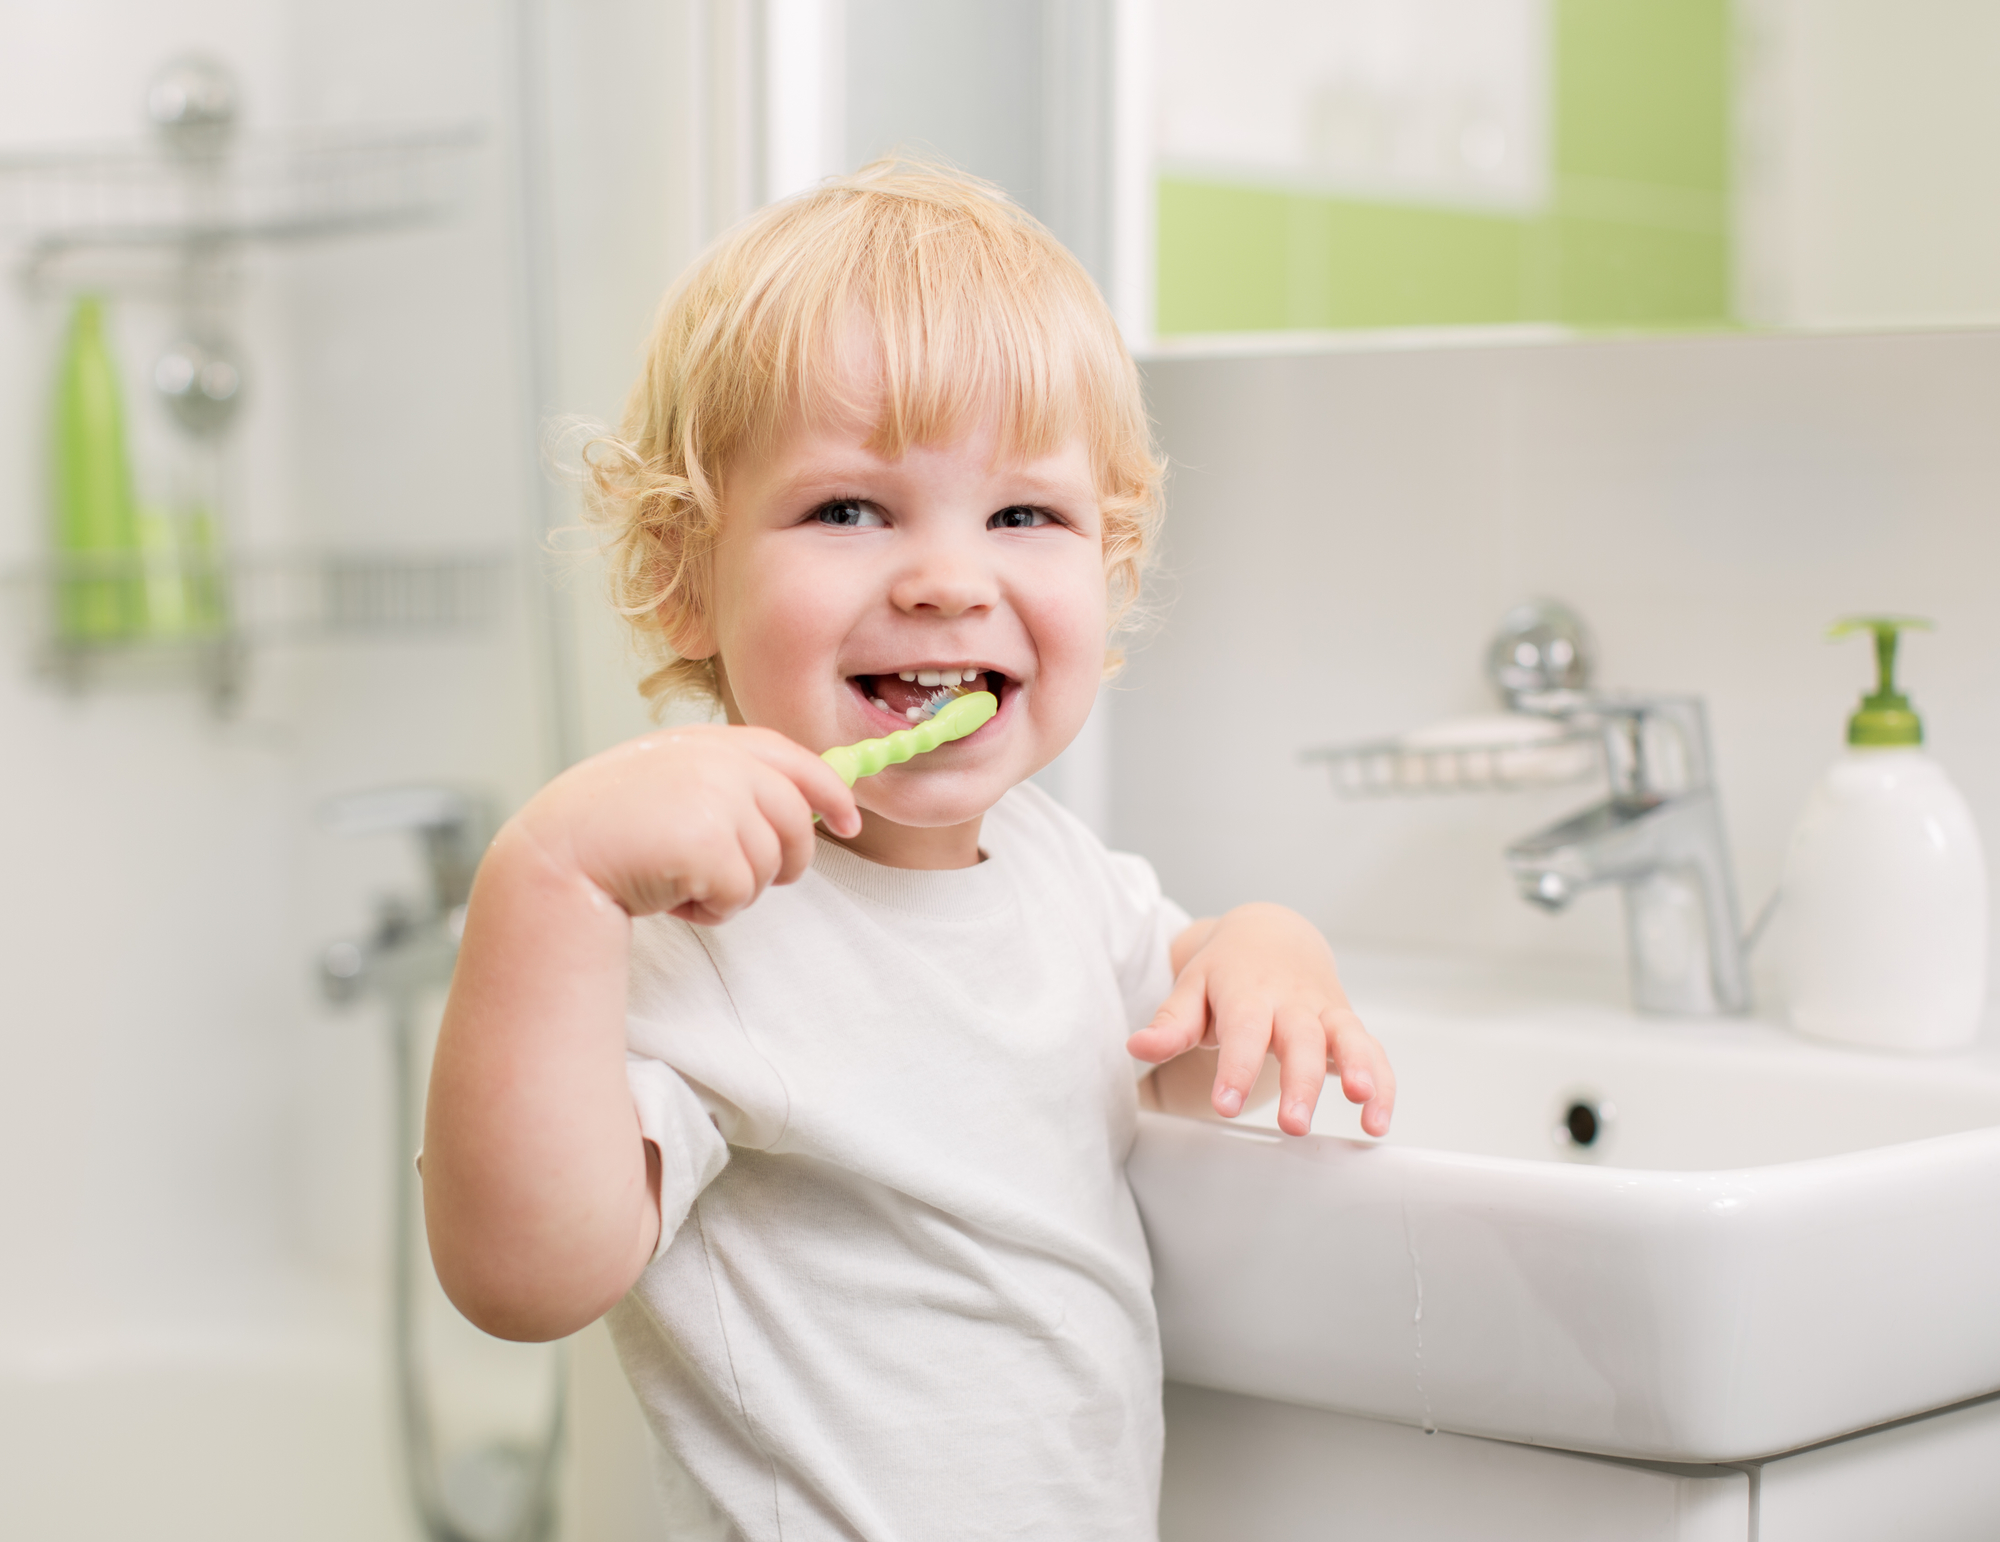 ​як полоскати дитині горло шприцом - практикуй це з малюком, як навчити дитину полоскати рот від 2-3 років - чисти з нею зуби